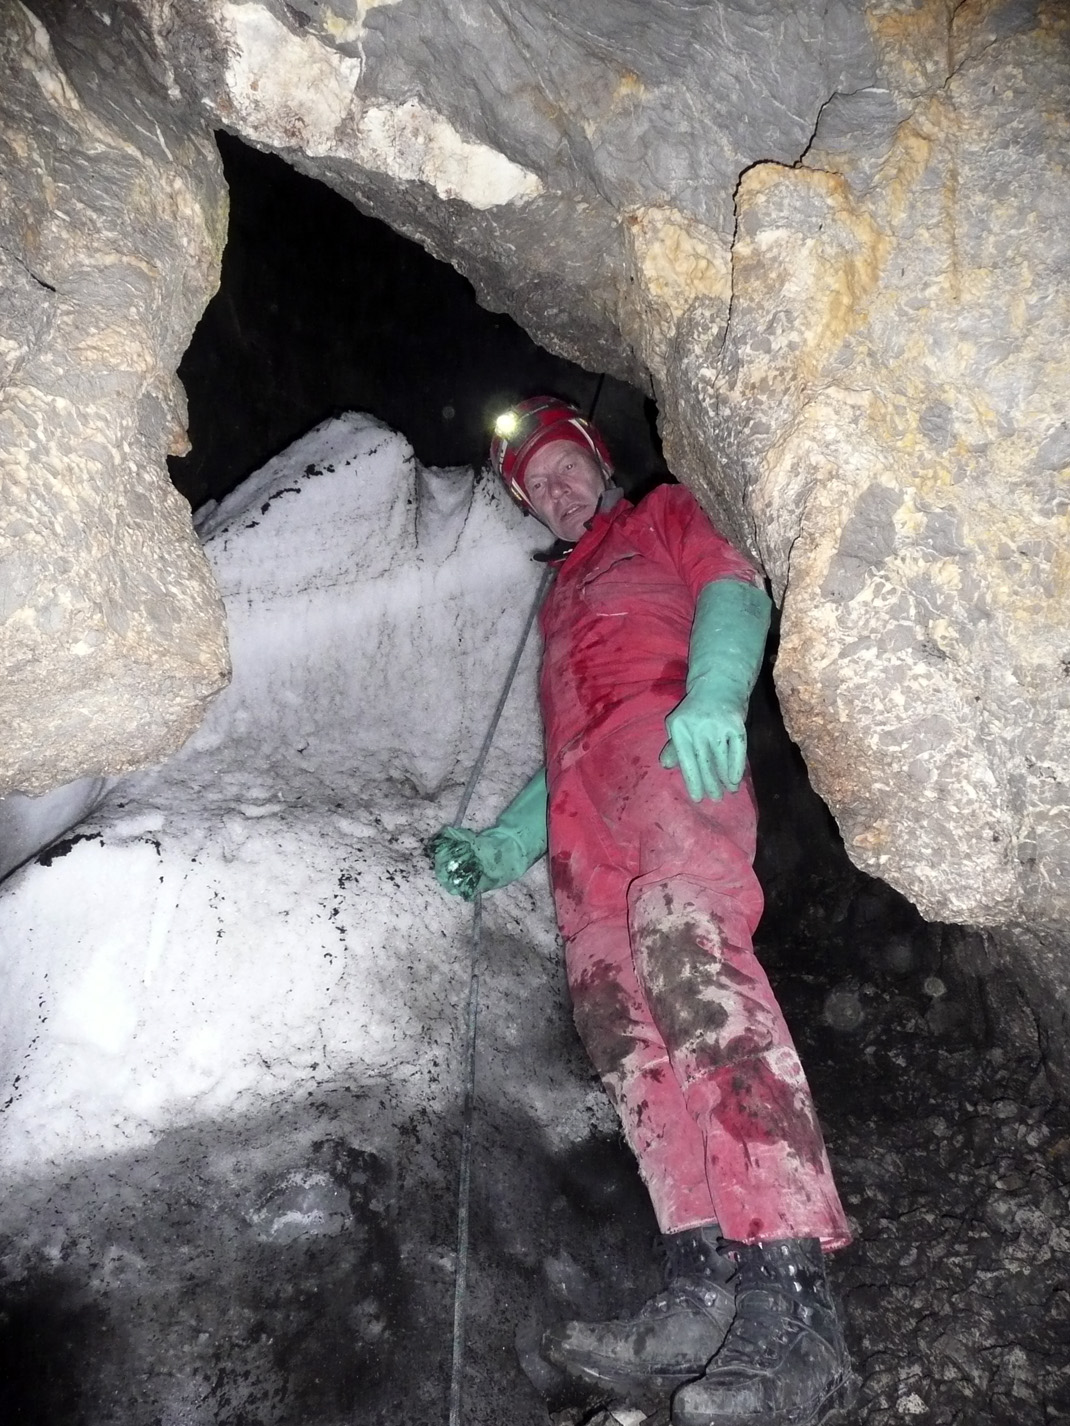 Letzte Schnee- und Firnreste im unteren Bereich der Schachthöhle im September 2008.